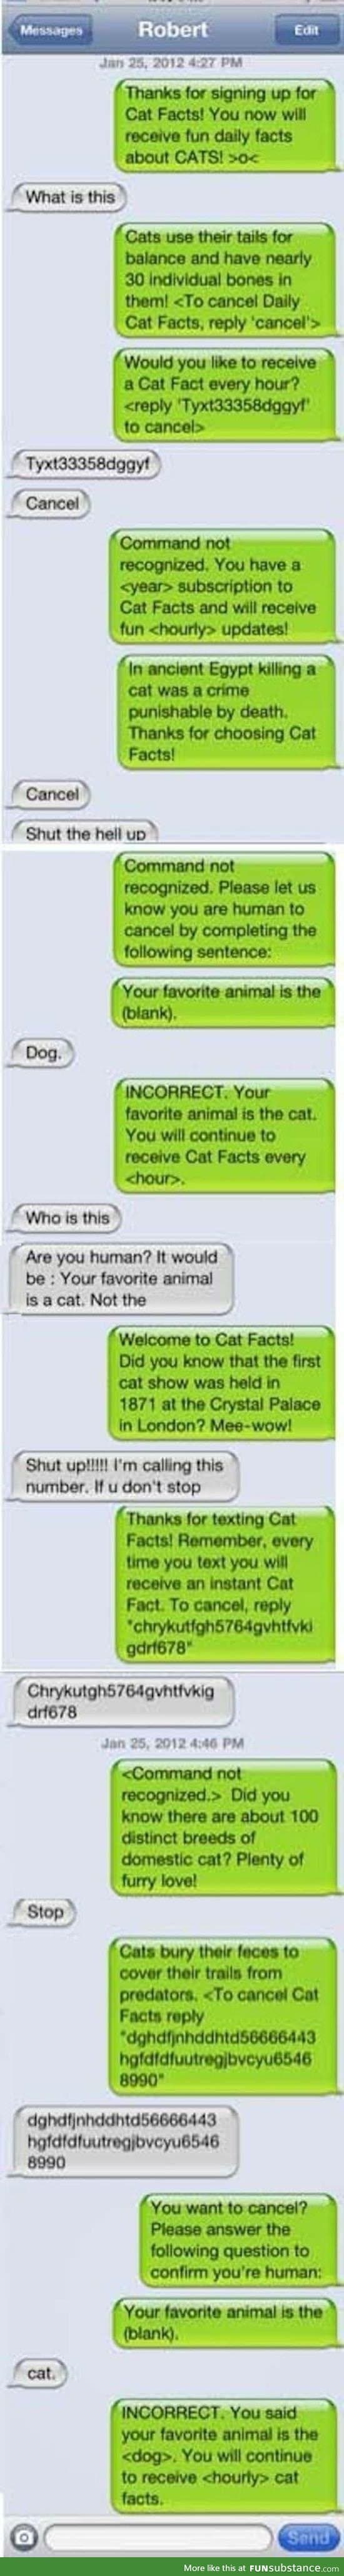 Cat FActs